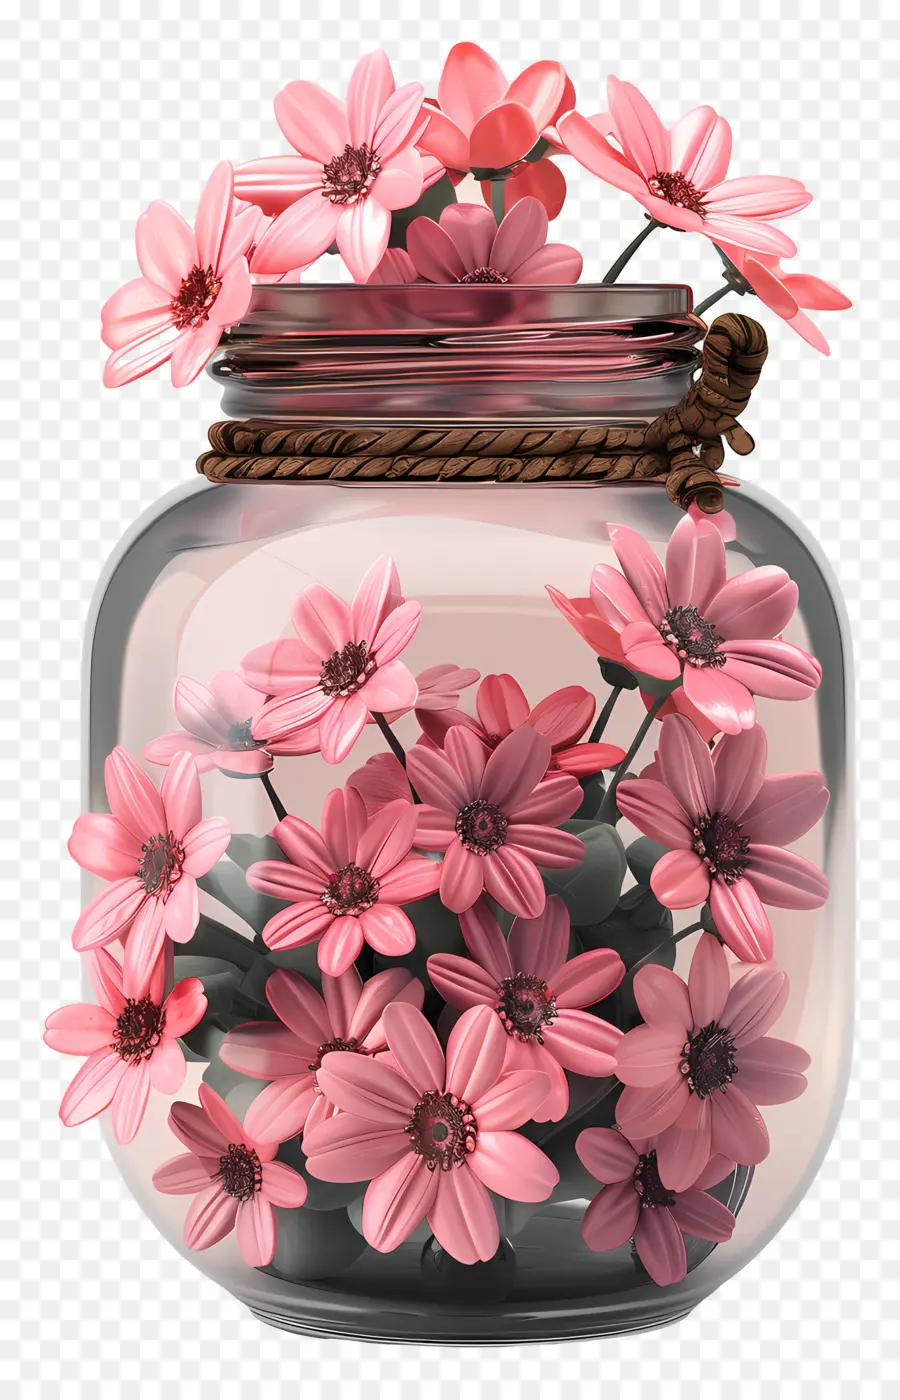 bình hoa - Hoa cúc hồng trong bình thủy tinh trong suốt